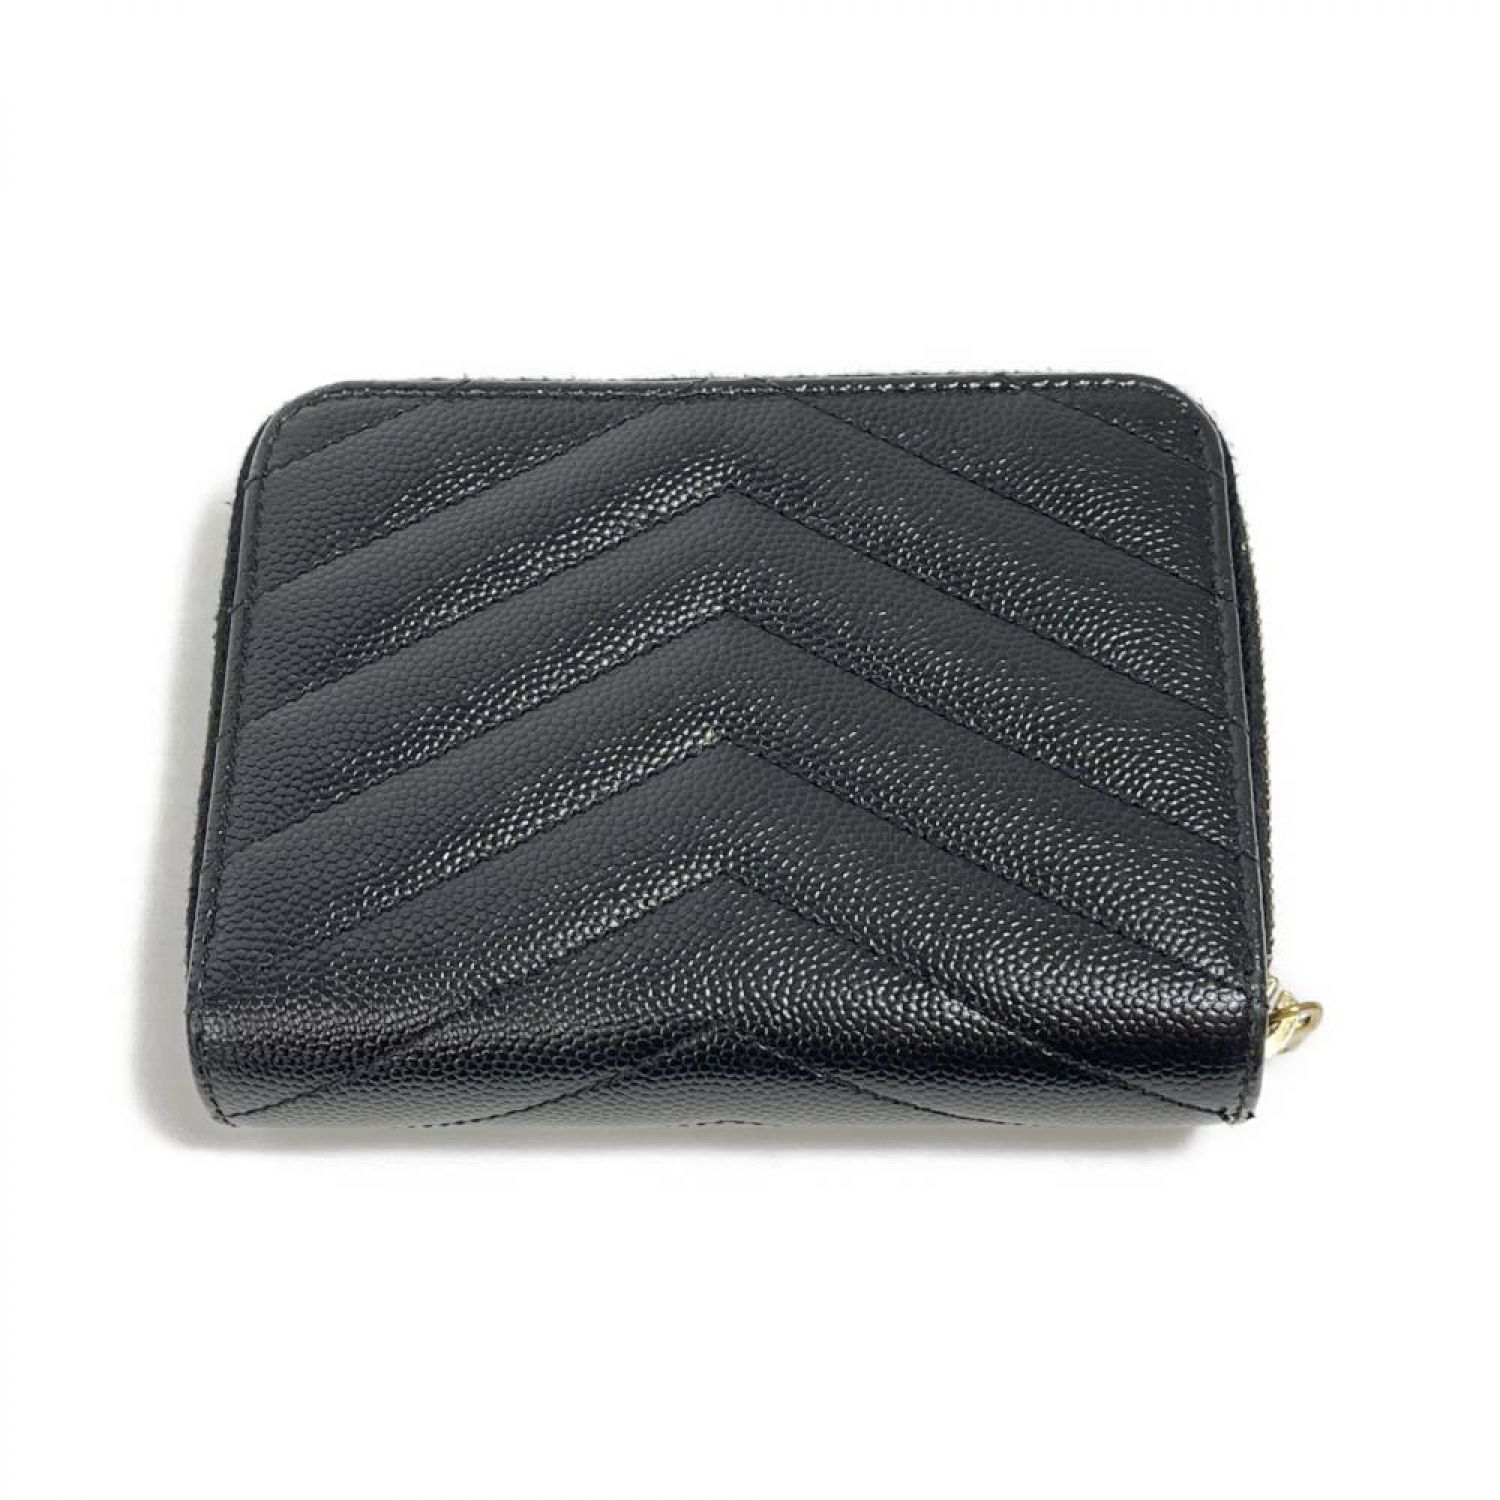 中古】 Yves Saint Laurent イブサンローラン カサンドラ 二つ折り財布 